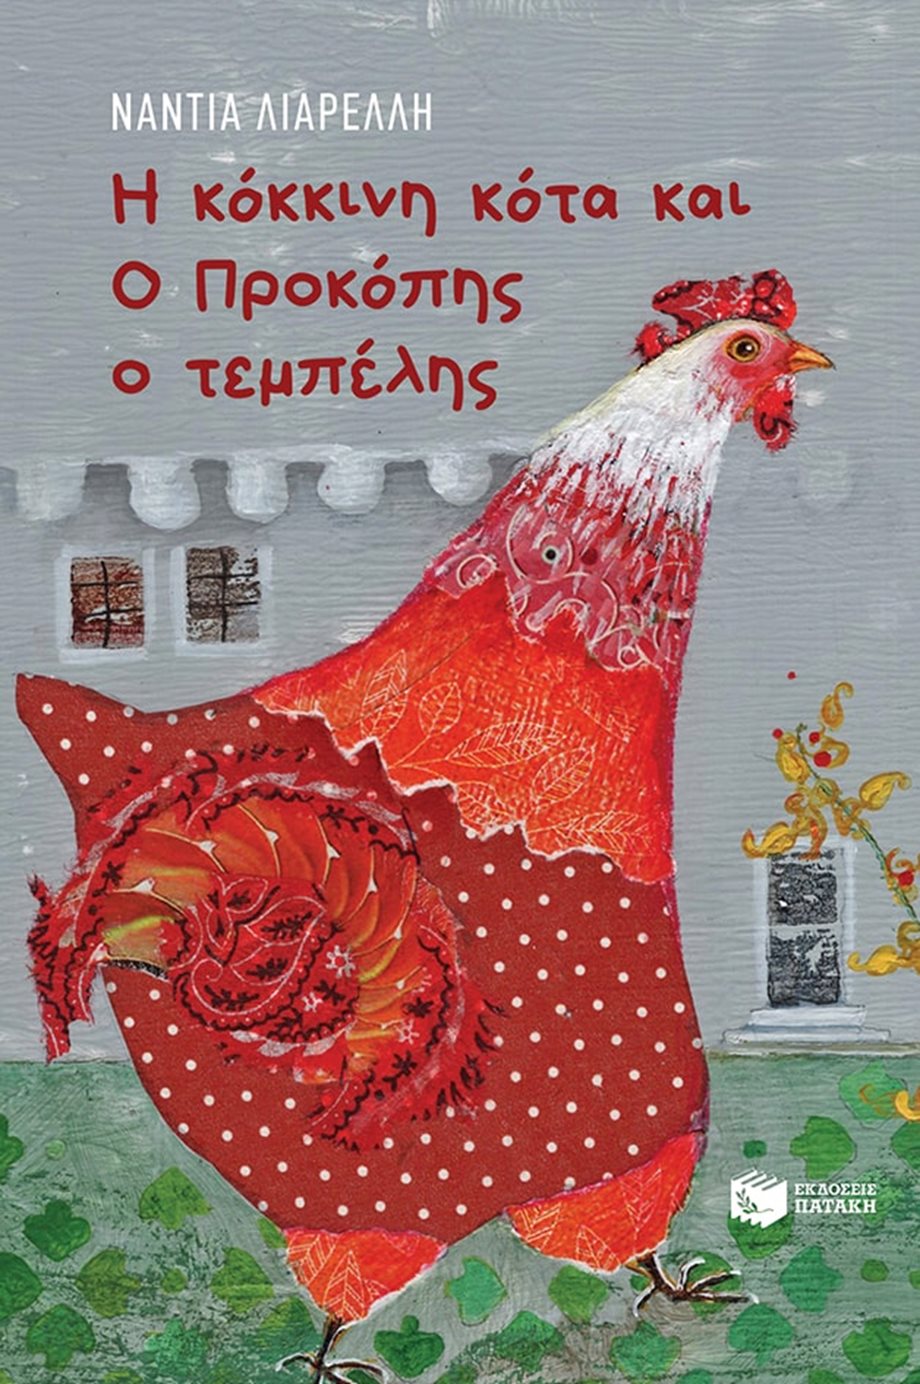 Παιδικό βιβλίο: "Η κόκκινη κότα και ο Προκόπης ο τεμπέλης" της Νάντιας Λιαρέλλη